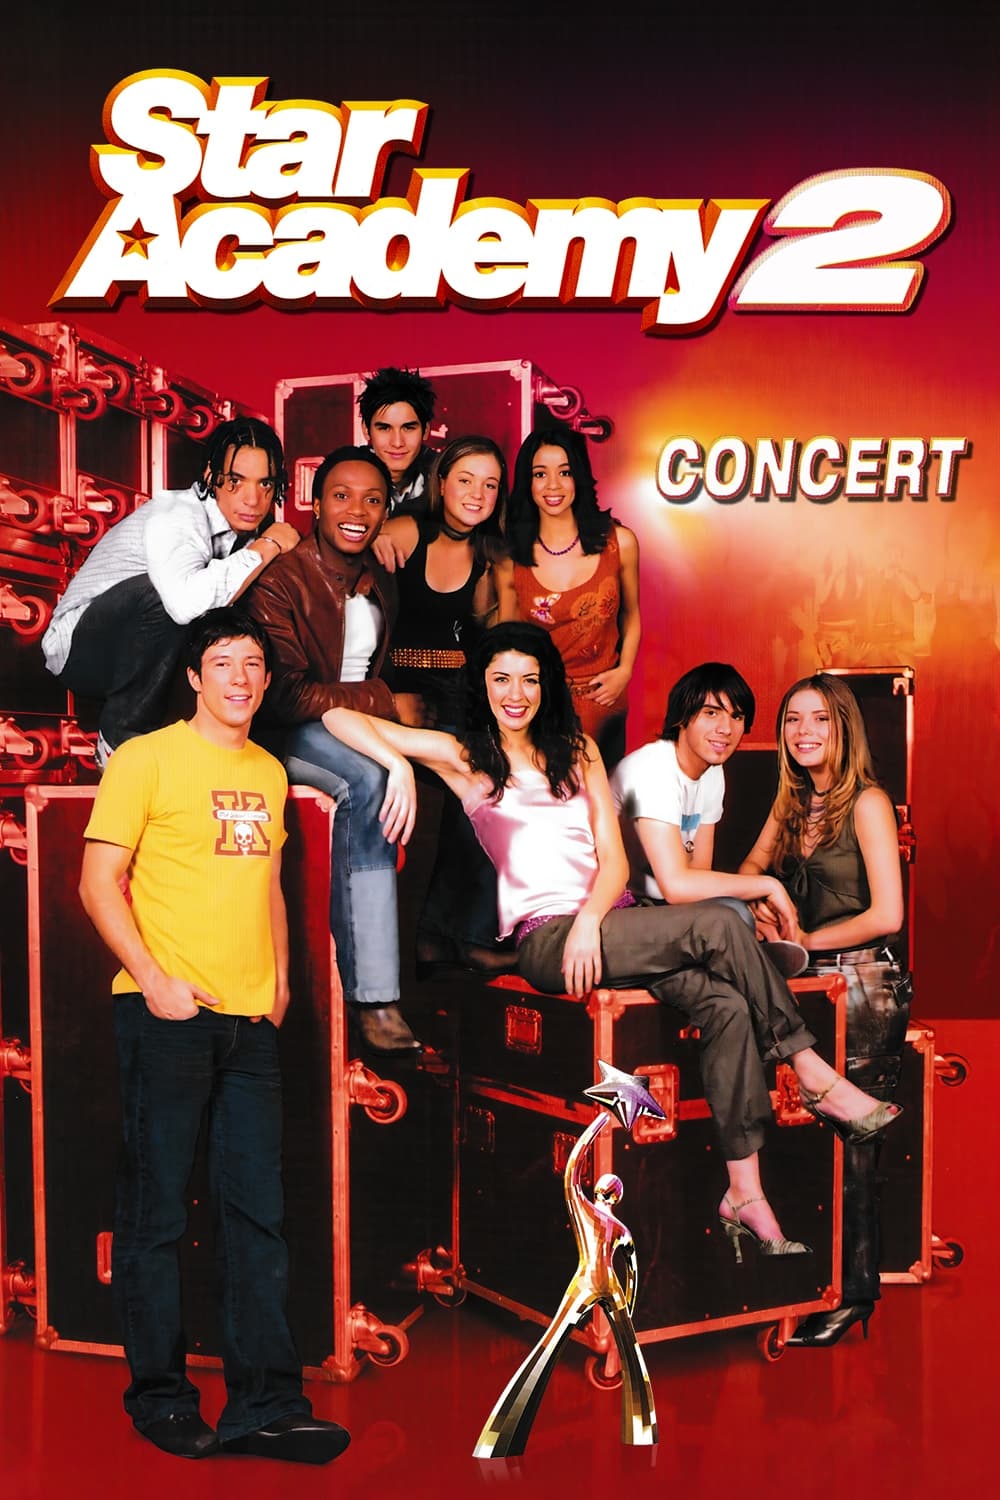 Star Academy 2 - En concert